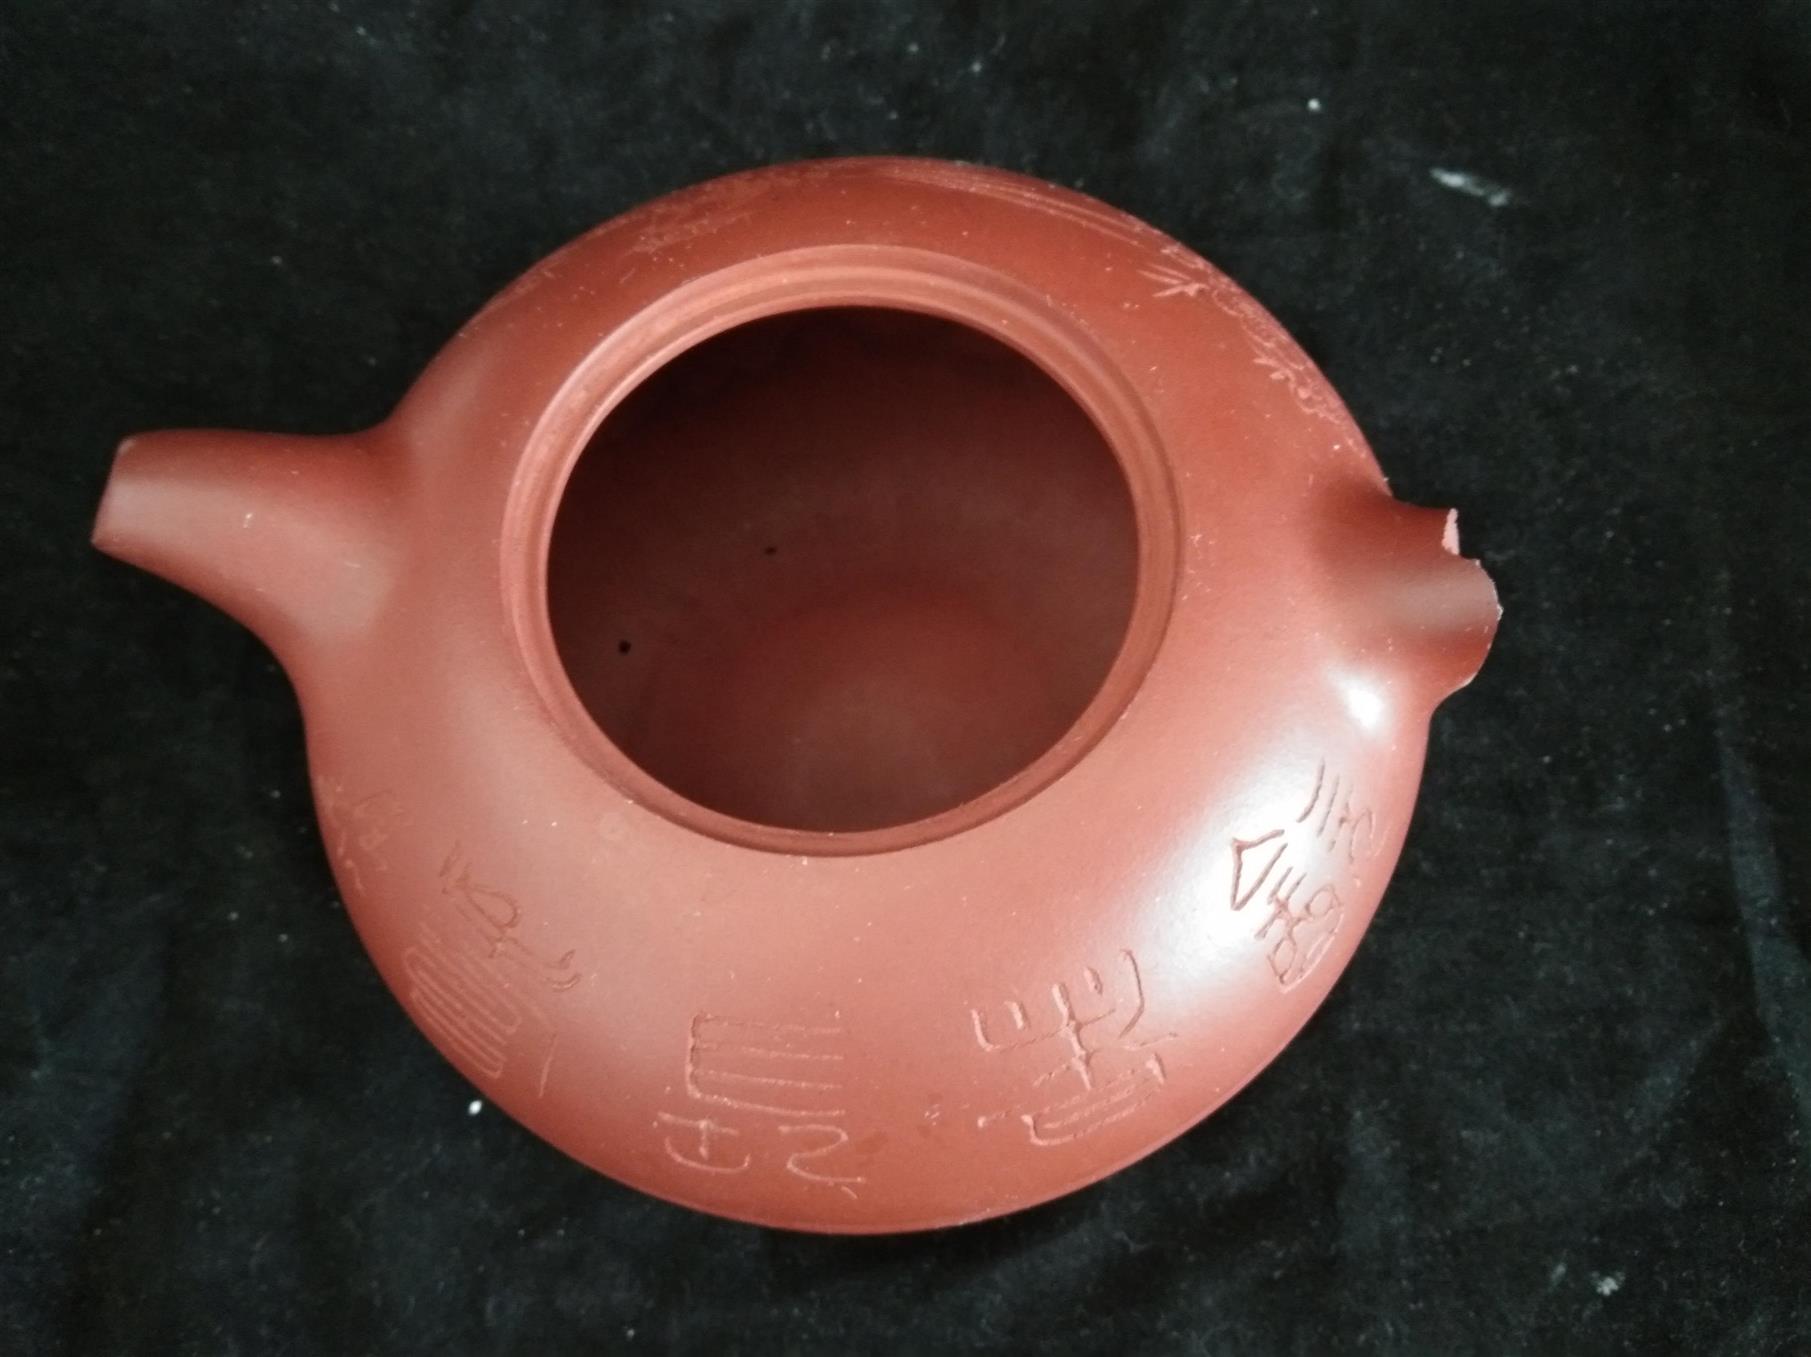 成都紫砂壶无痕修复技术培训 南京美瓷工艺品有限公司